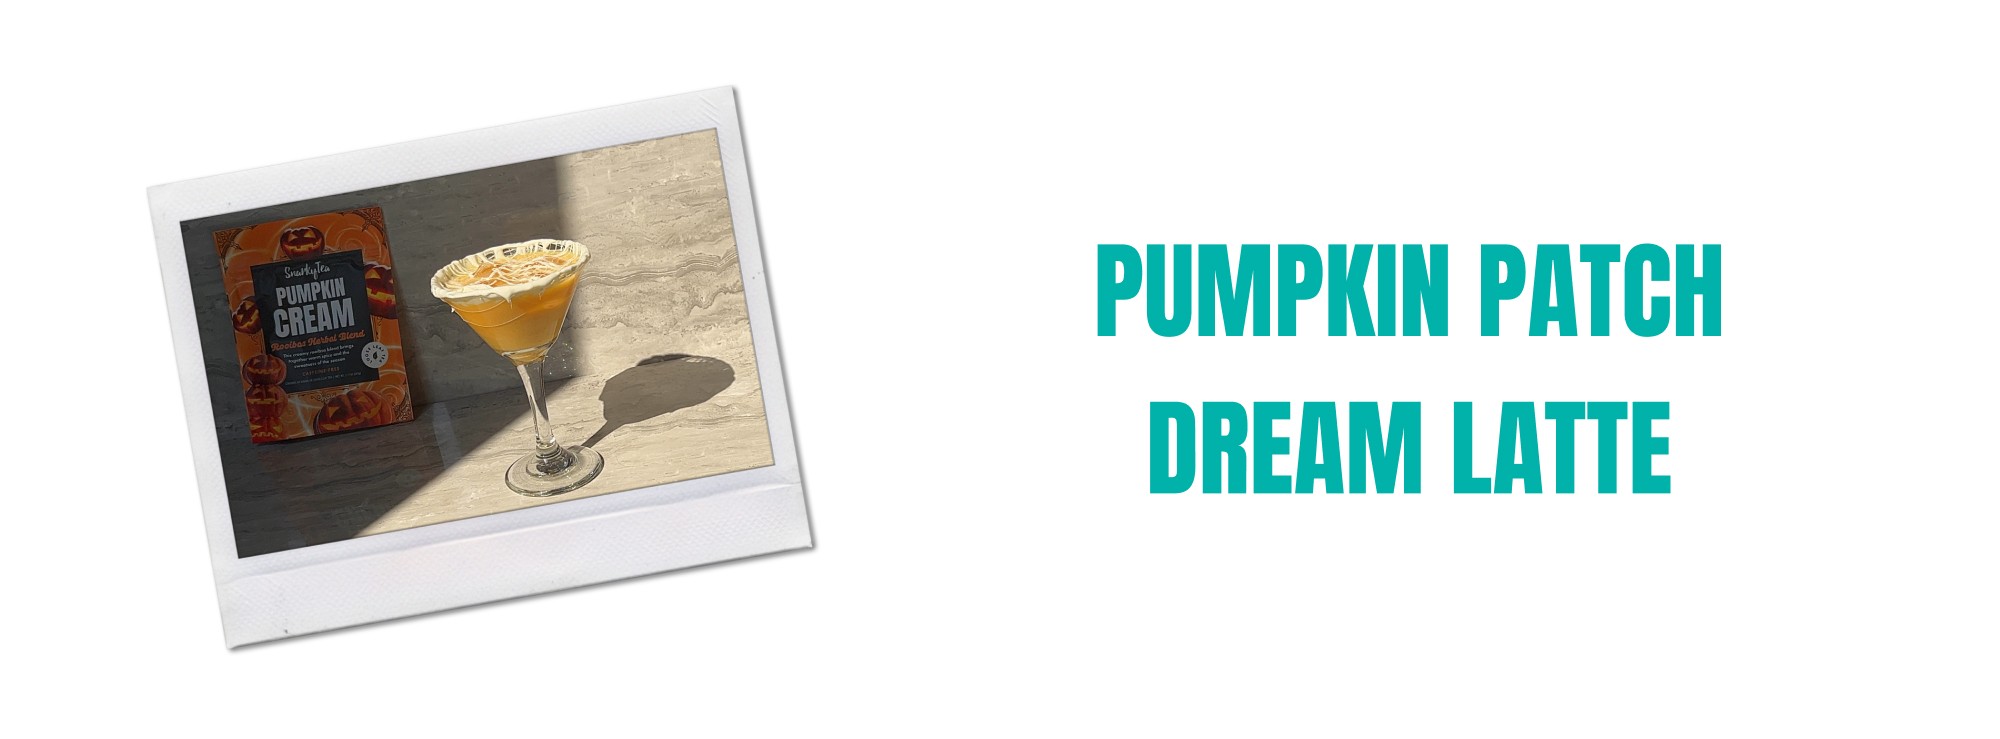 Pumpkin Patch Dream Latte